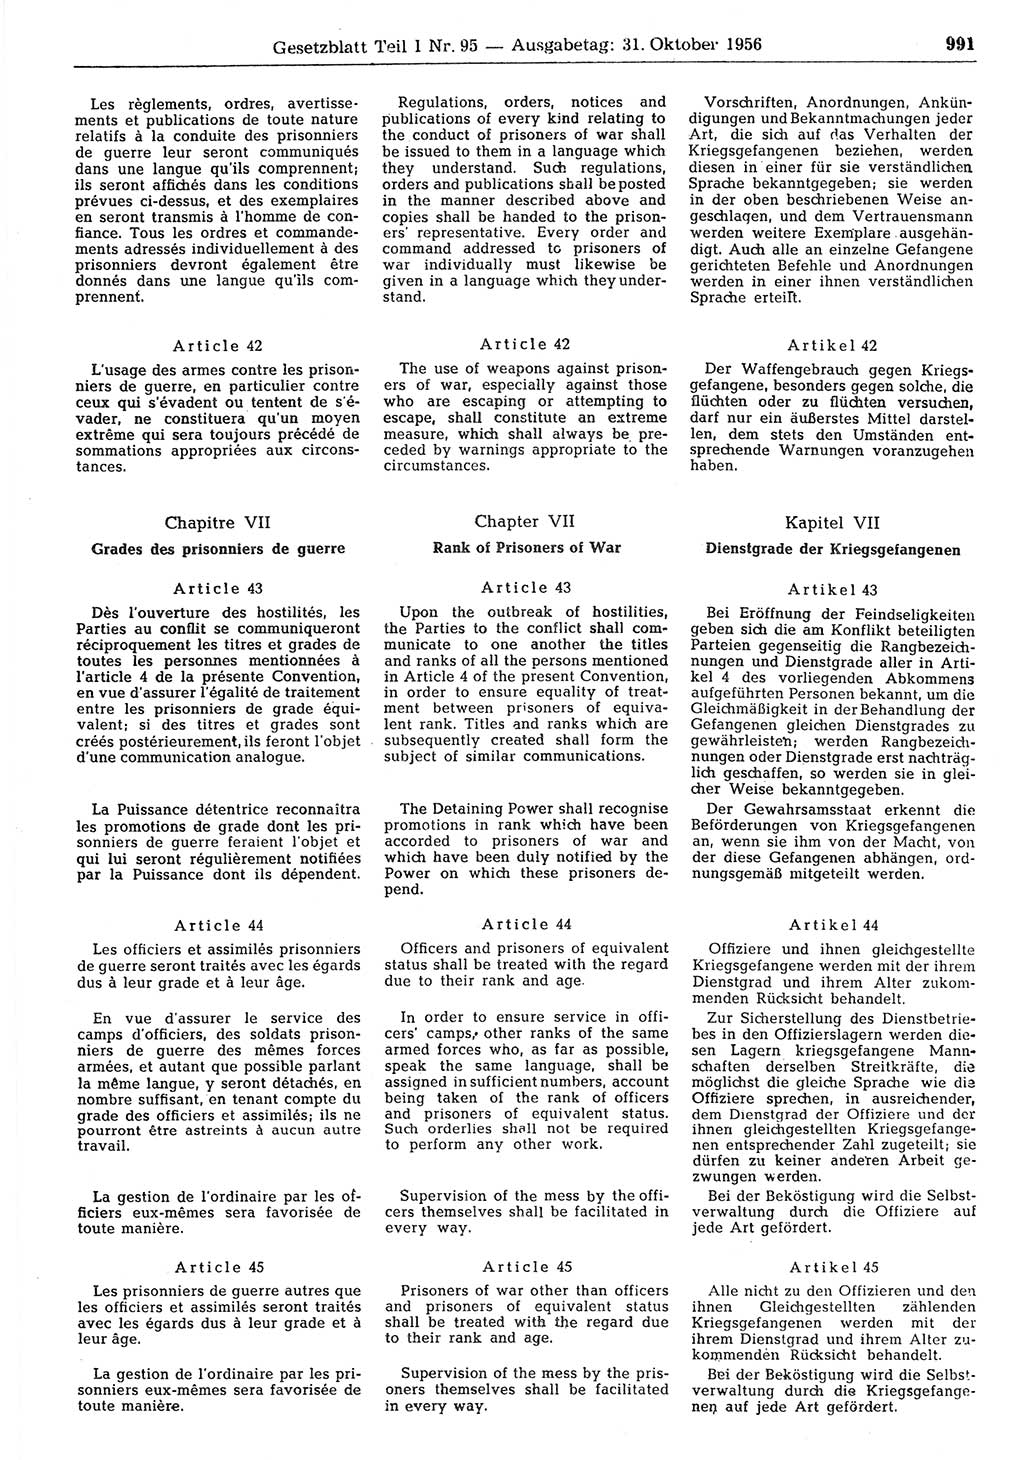 Gesetzblatt (GBl.) der Deutschen Demokratischen Republik (DDR) Teil Ⅰ 1956, Seite 991 (GBl. DDR Ⅰ 1956, S. 991)